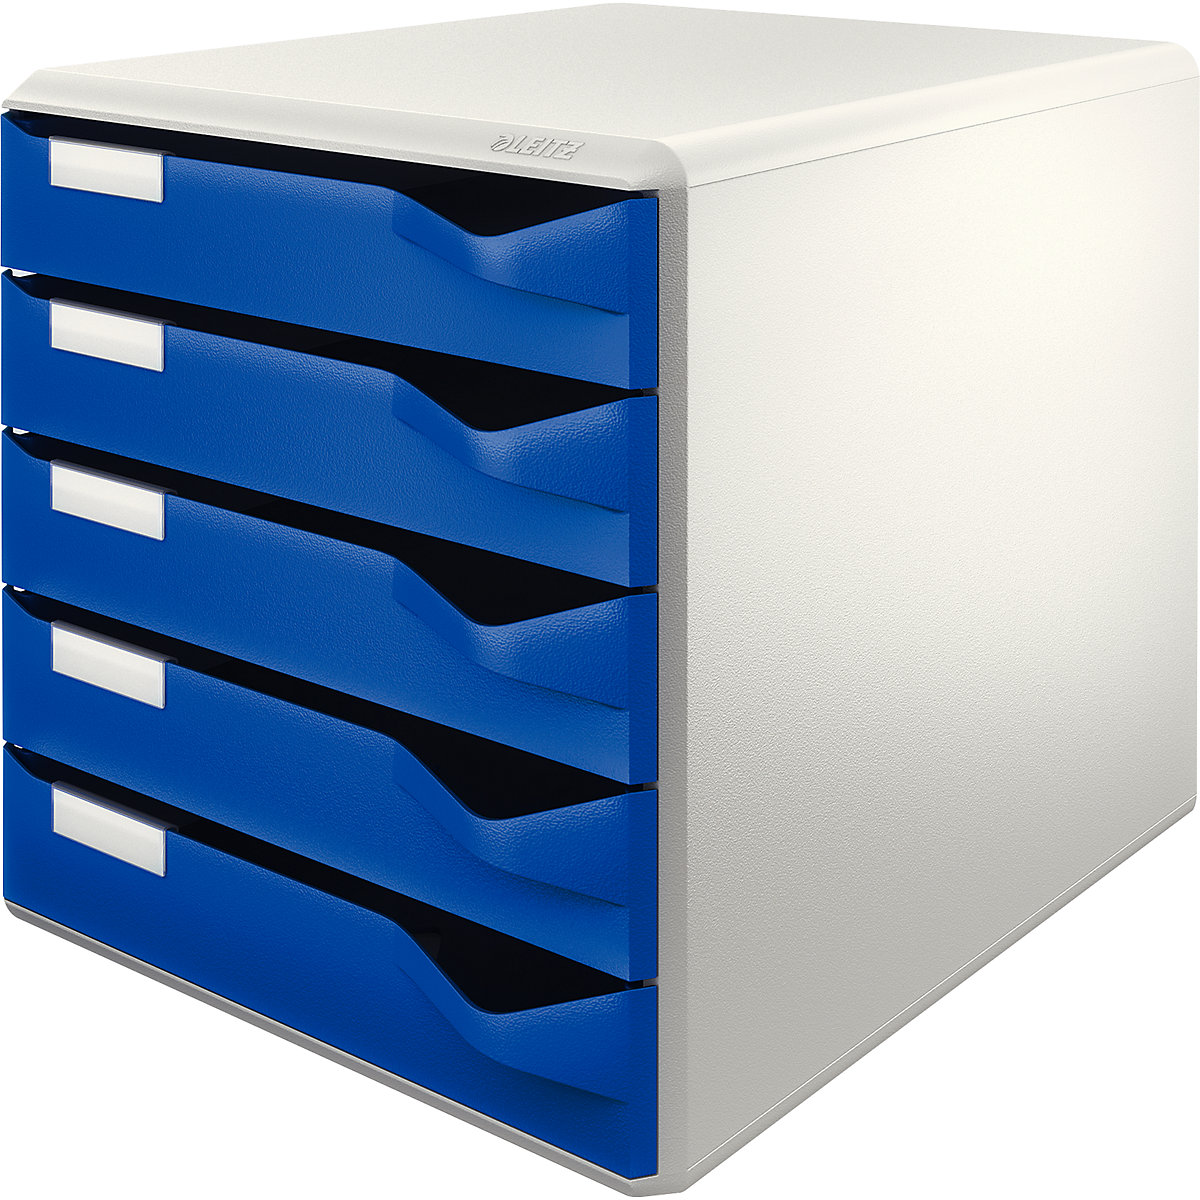 Caixa de arquivo – Leitz, conjunto para correio e formulários, cor do corpo cinzento, gavetas em azul, 5 gavetas-6